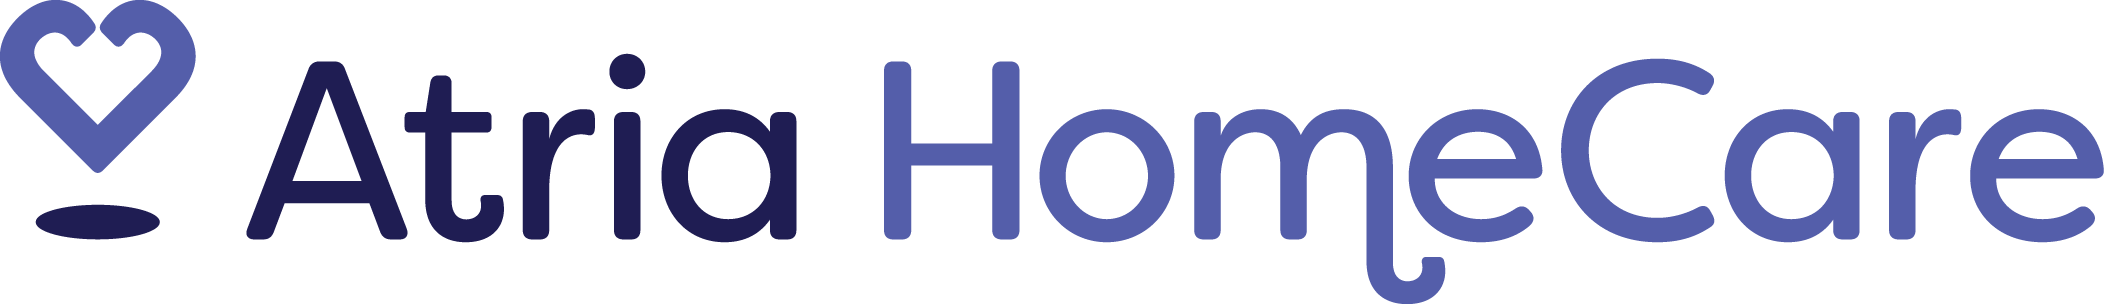 Atria Homecare Logo